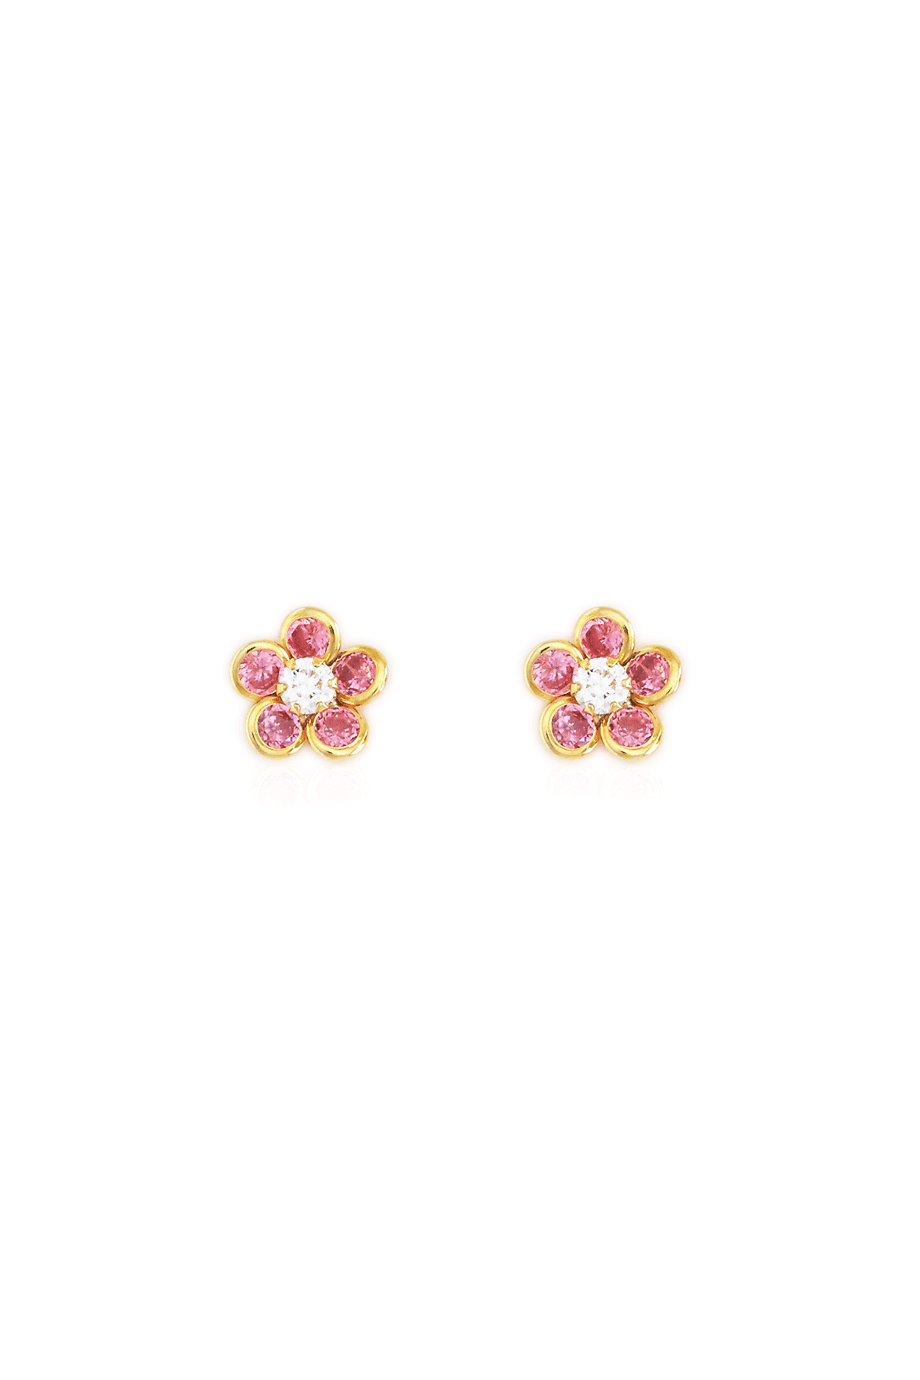 Earrings Daisies Pink